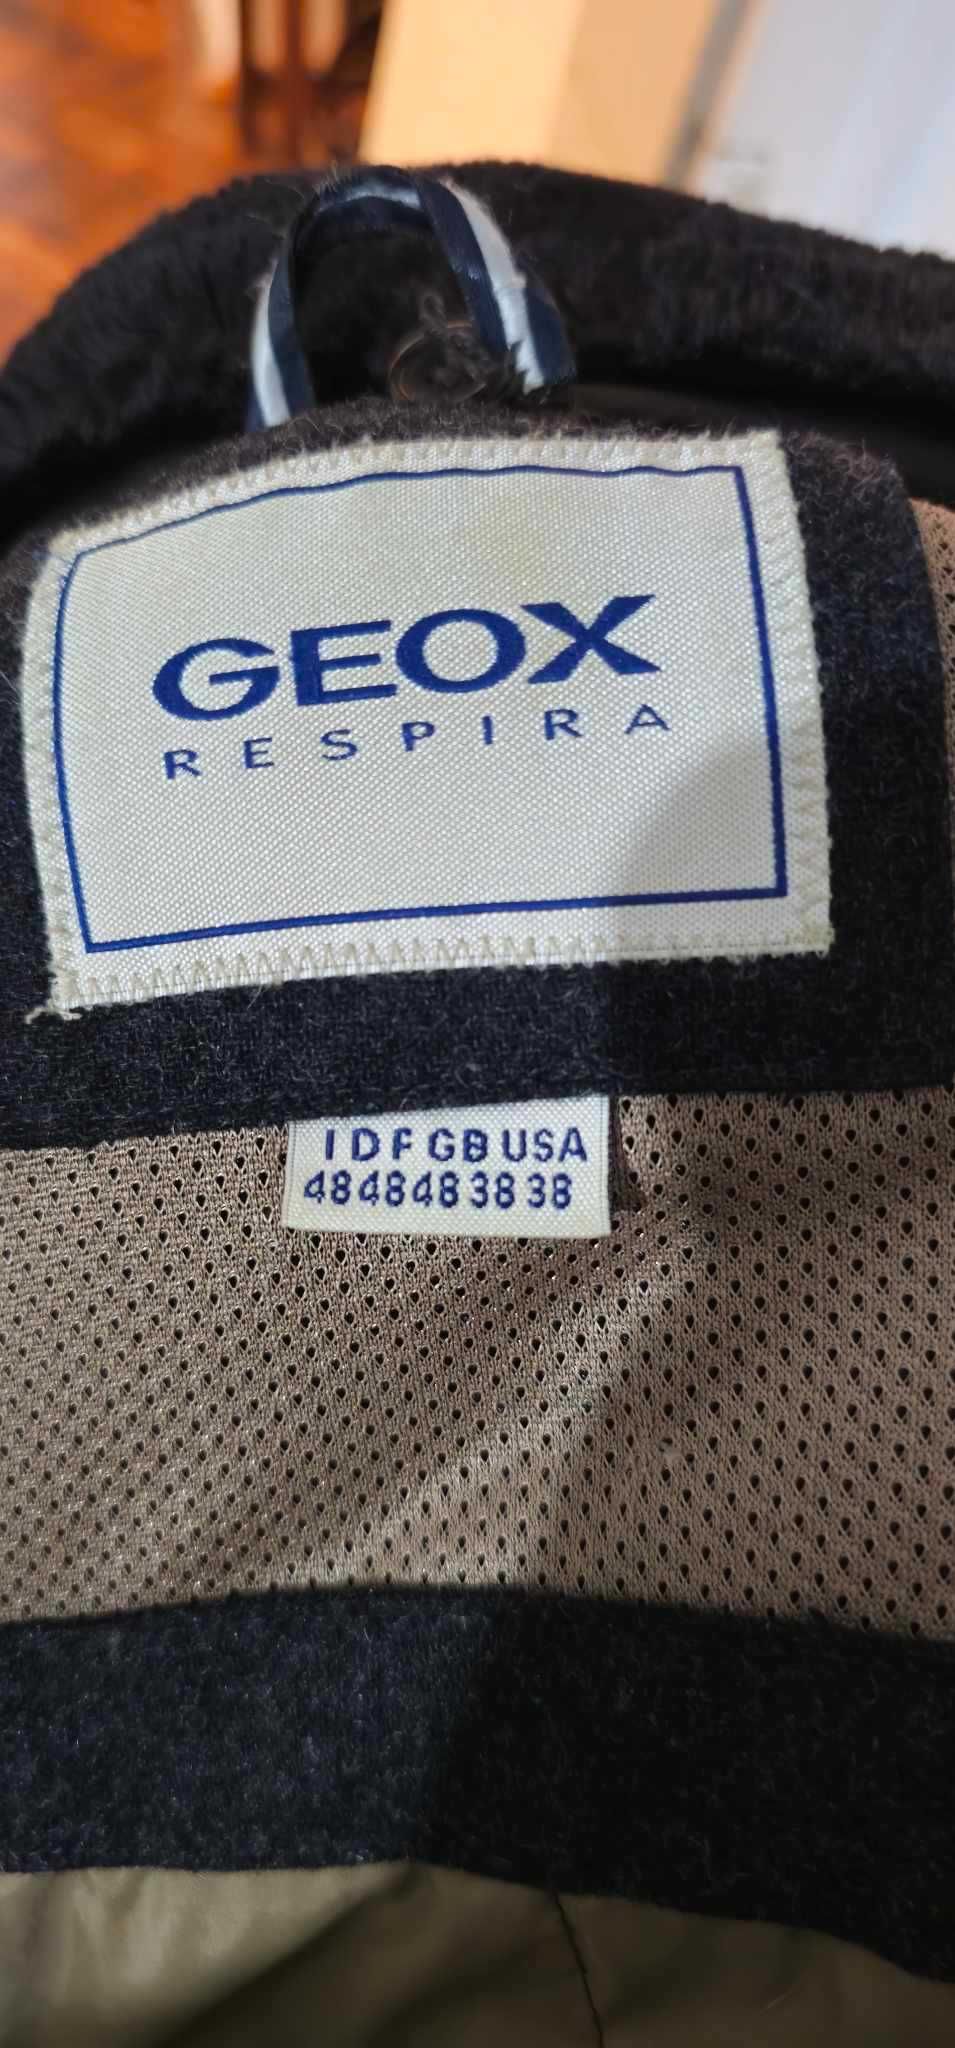 Geaca Geox Respira Barbati XL